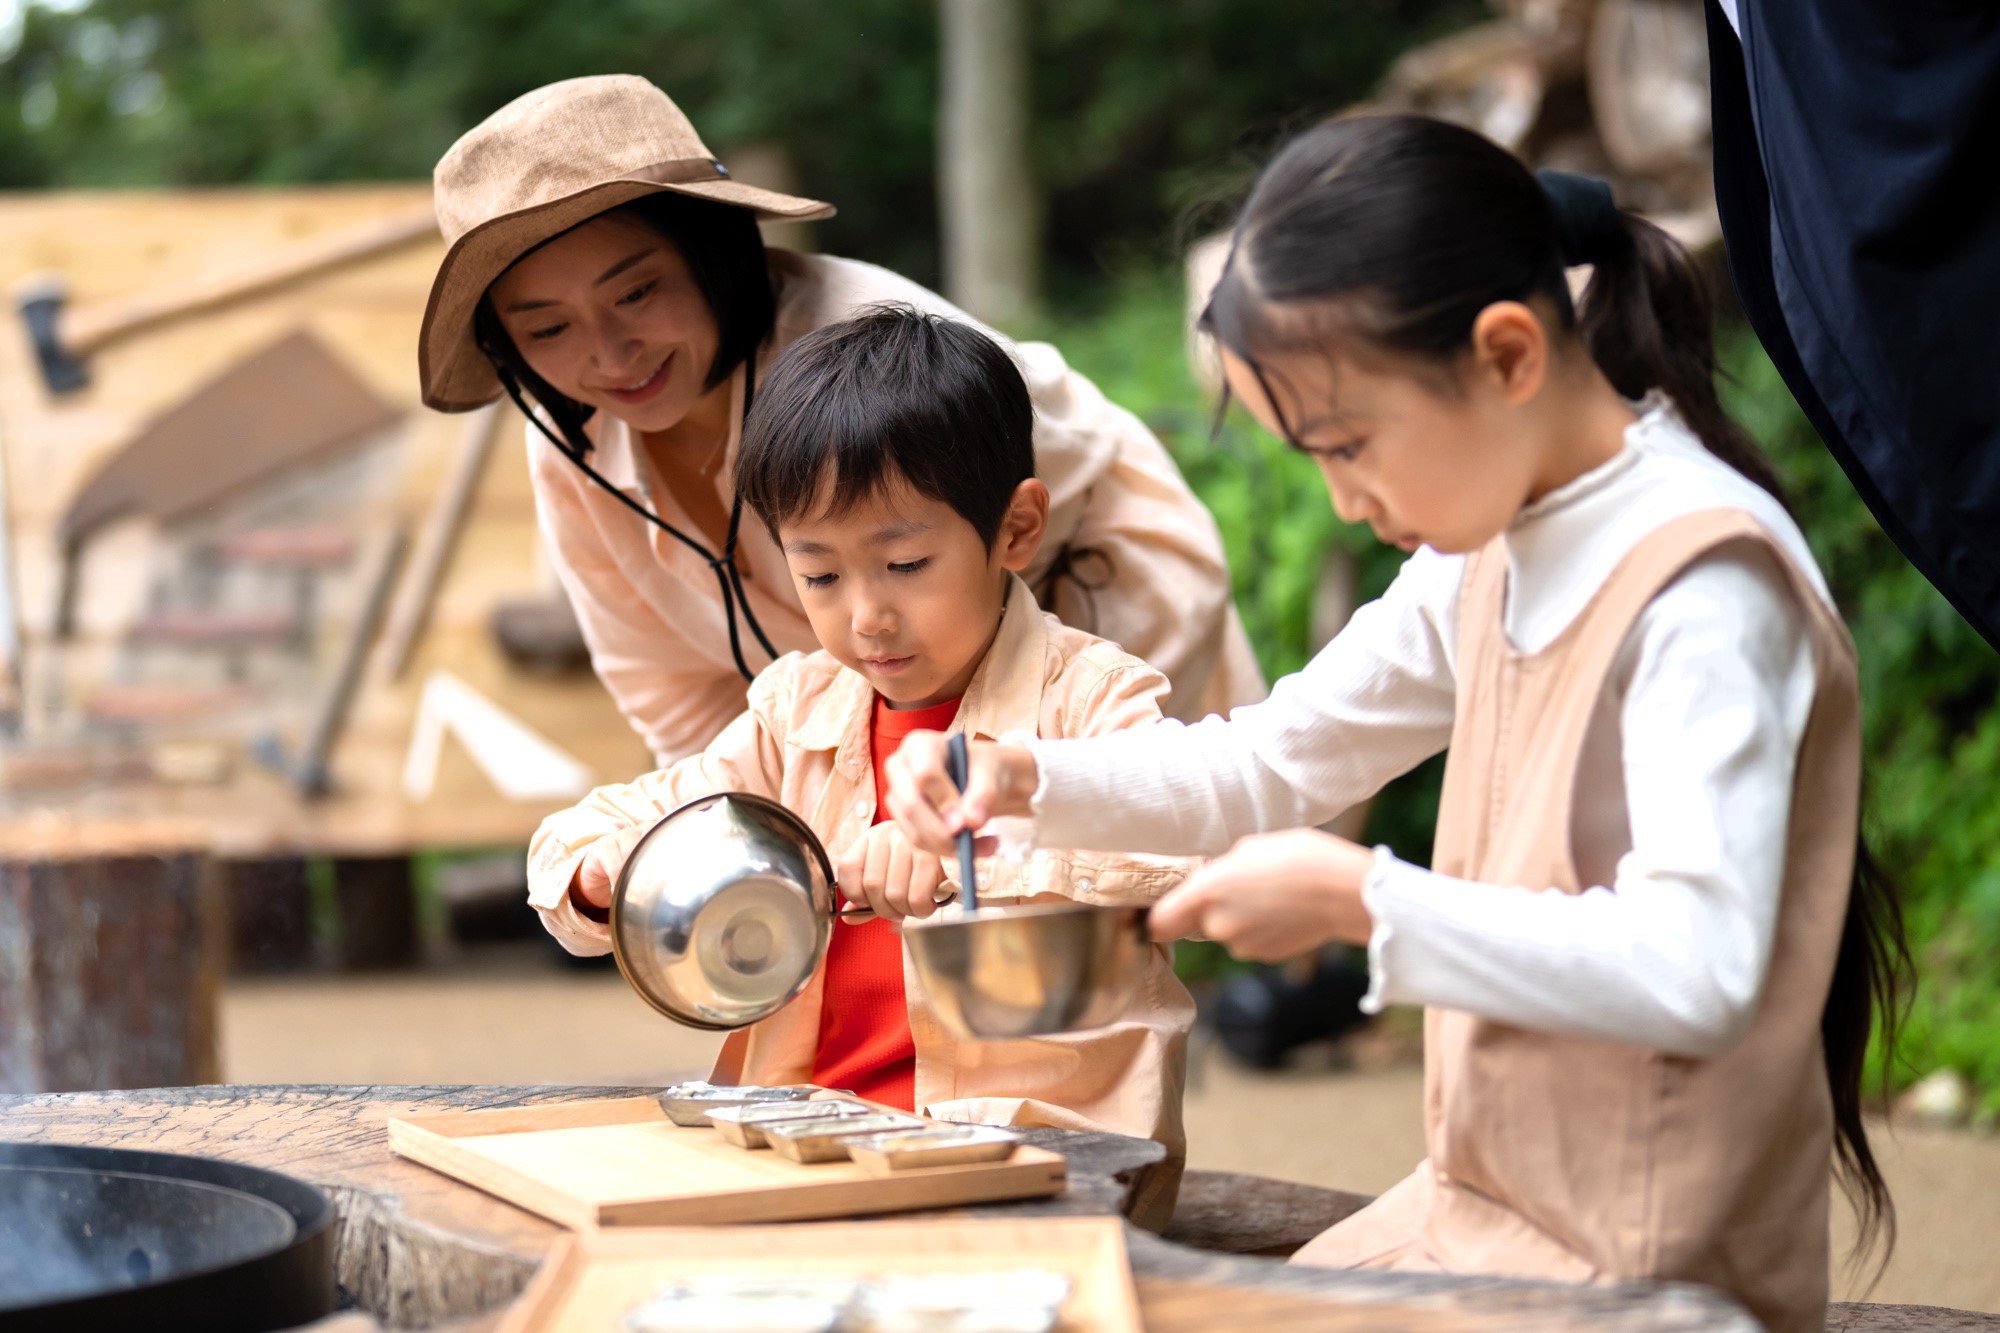 【オールインクルーシブ】六甲山の絶景を観ながらアウトドア料理を作って楽しむキュイジーヌグランピング